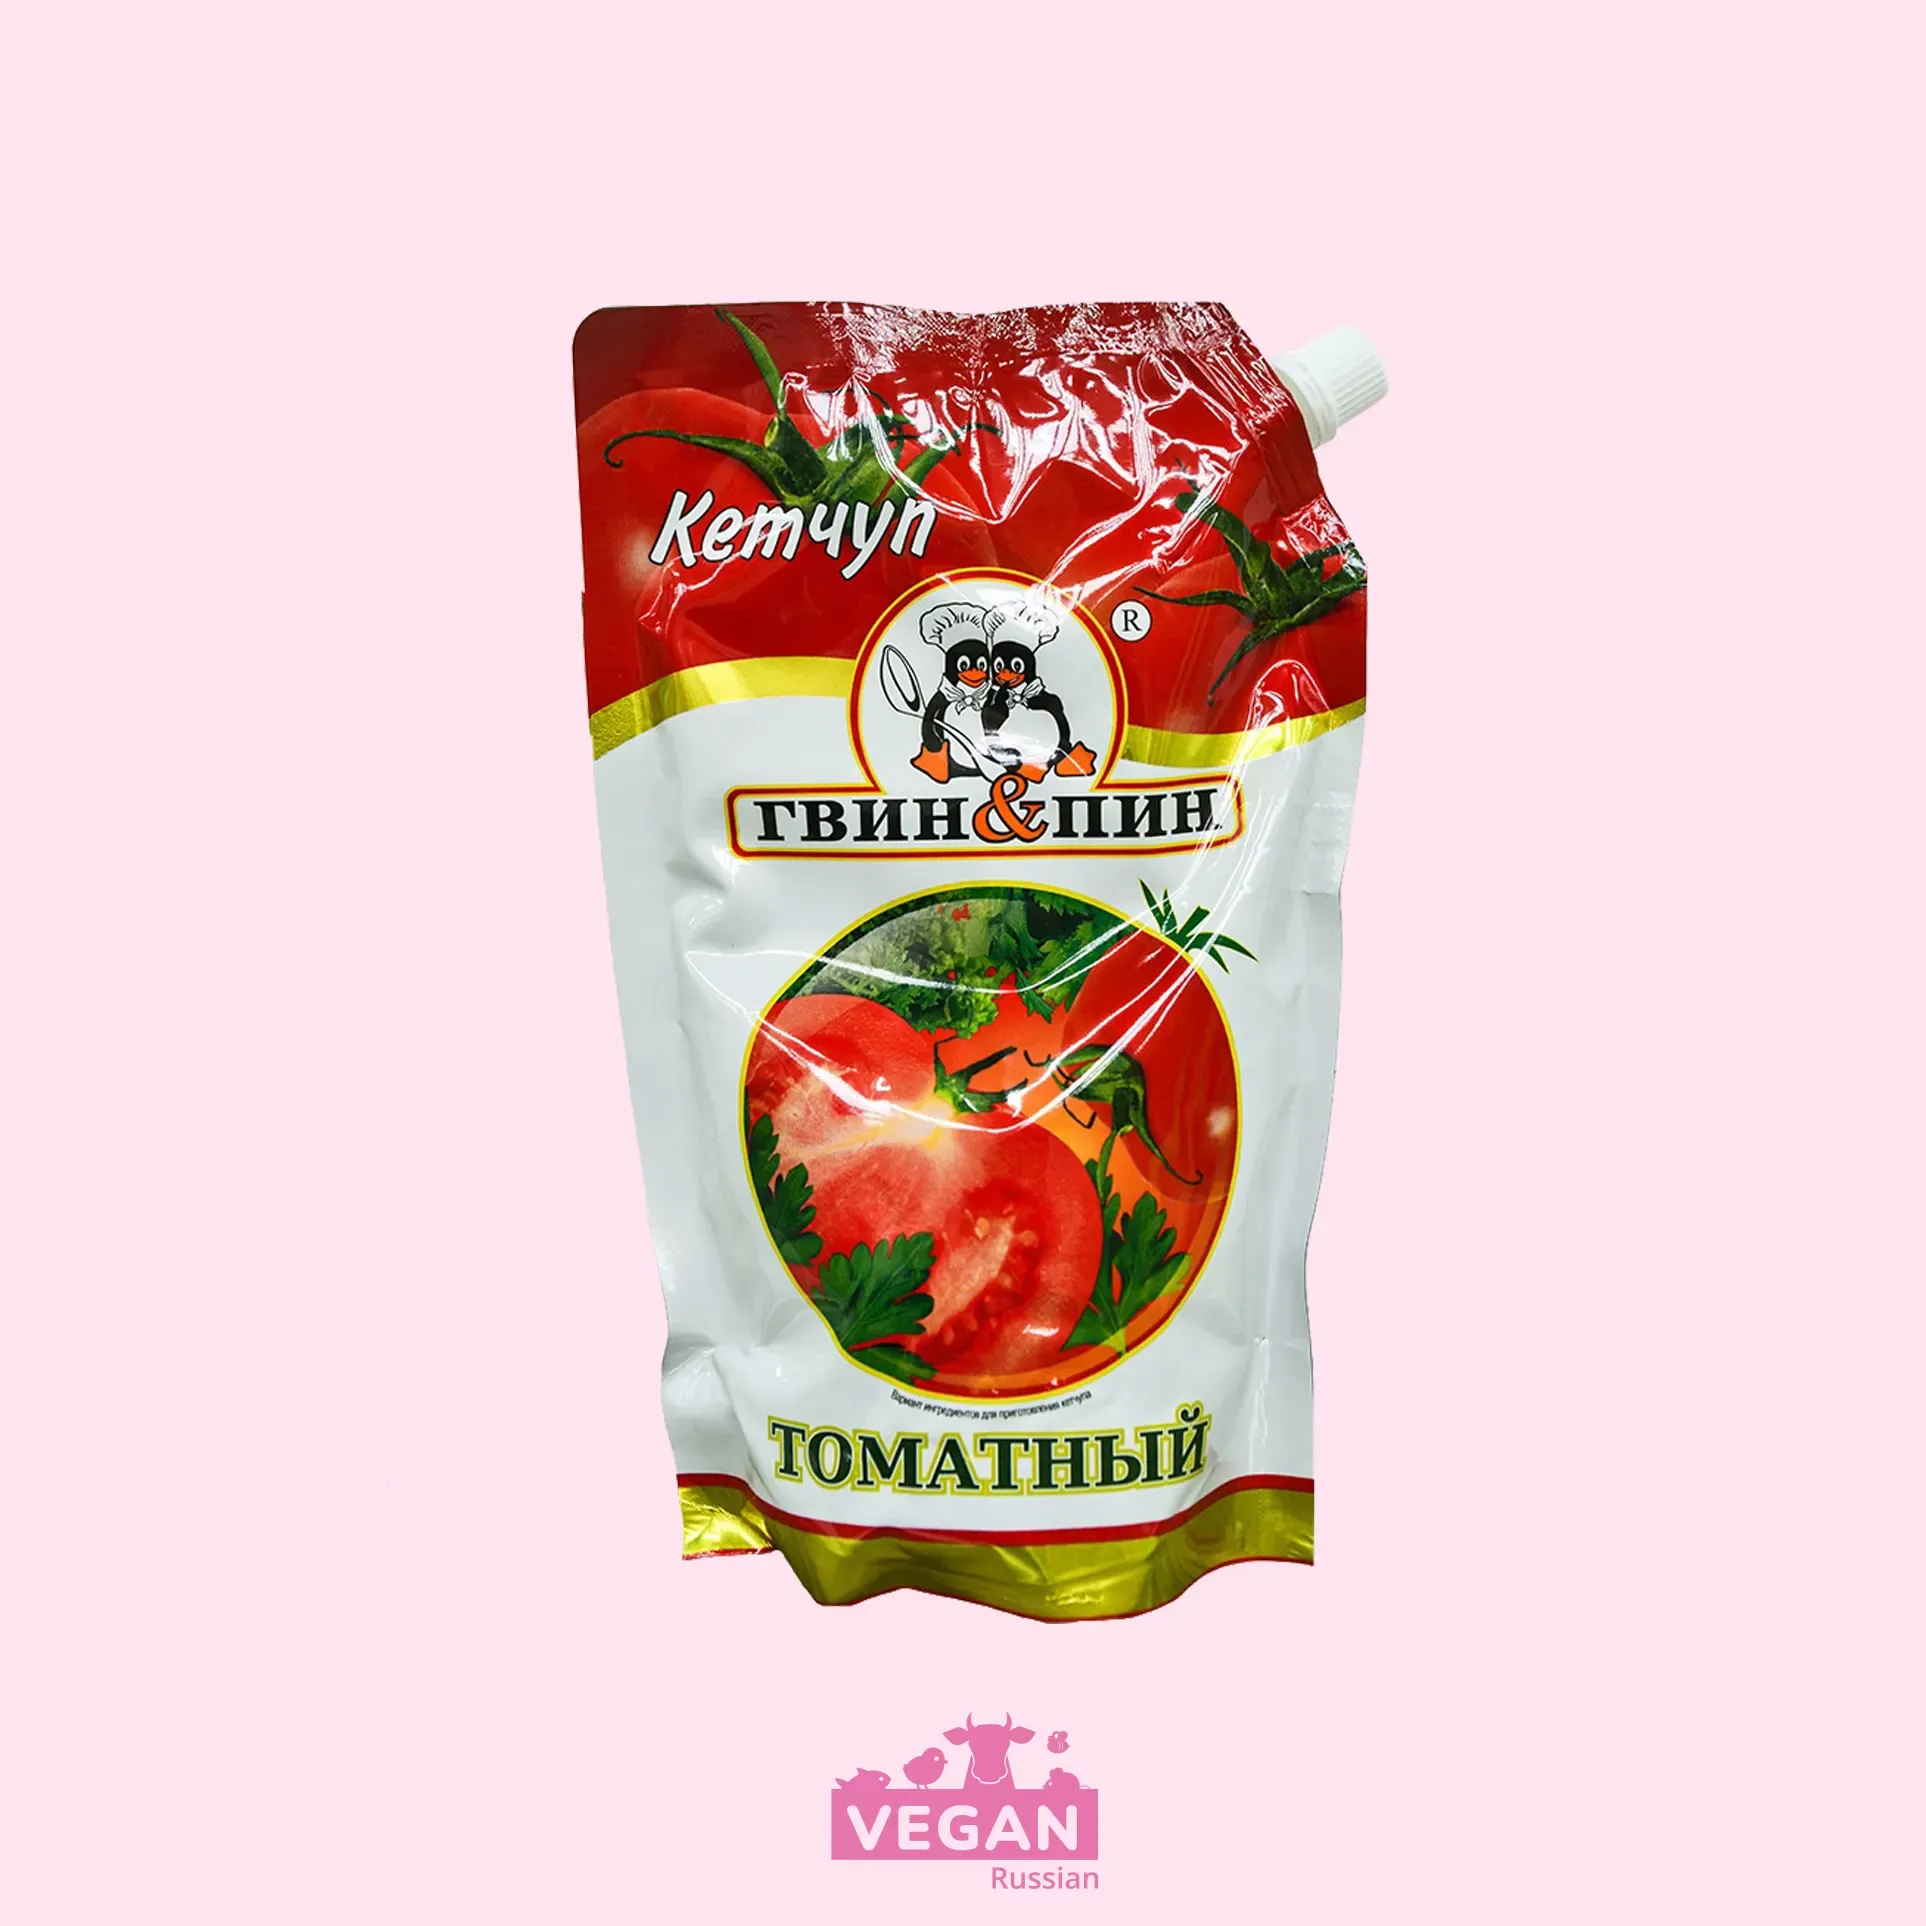 Кетчуп томатный Гвин&Пин 250-750 г